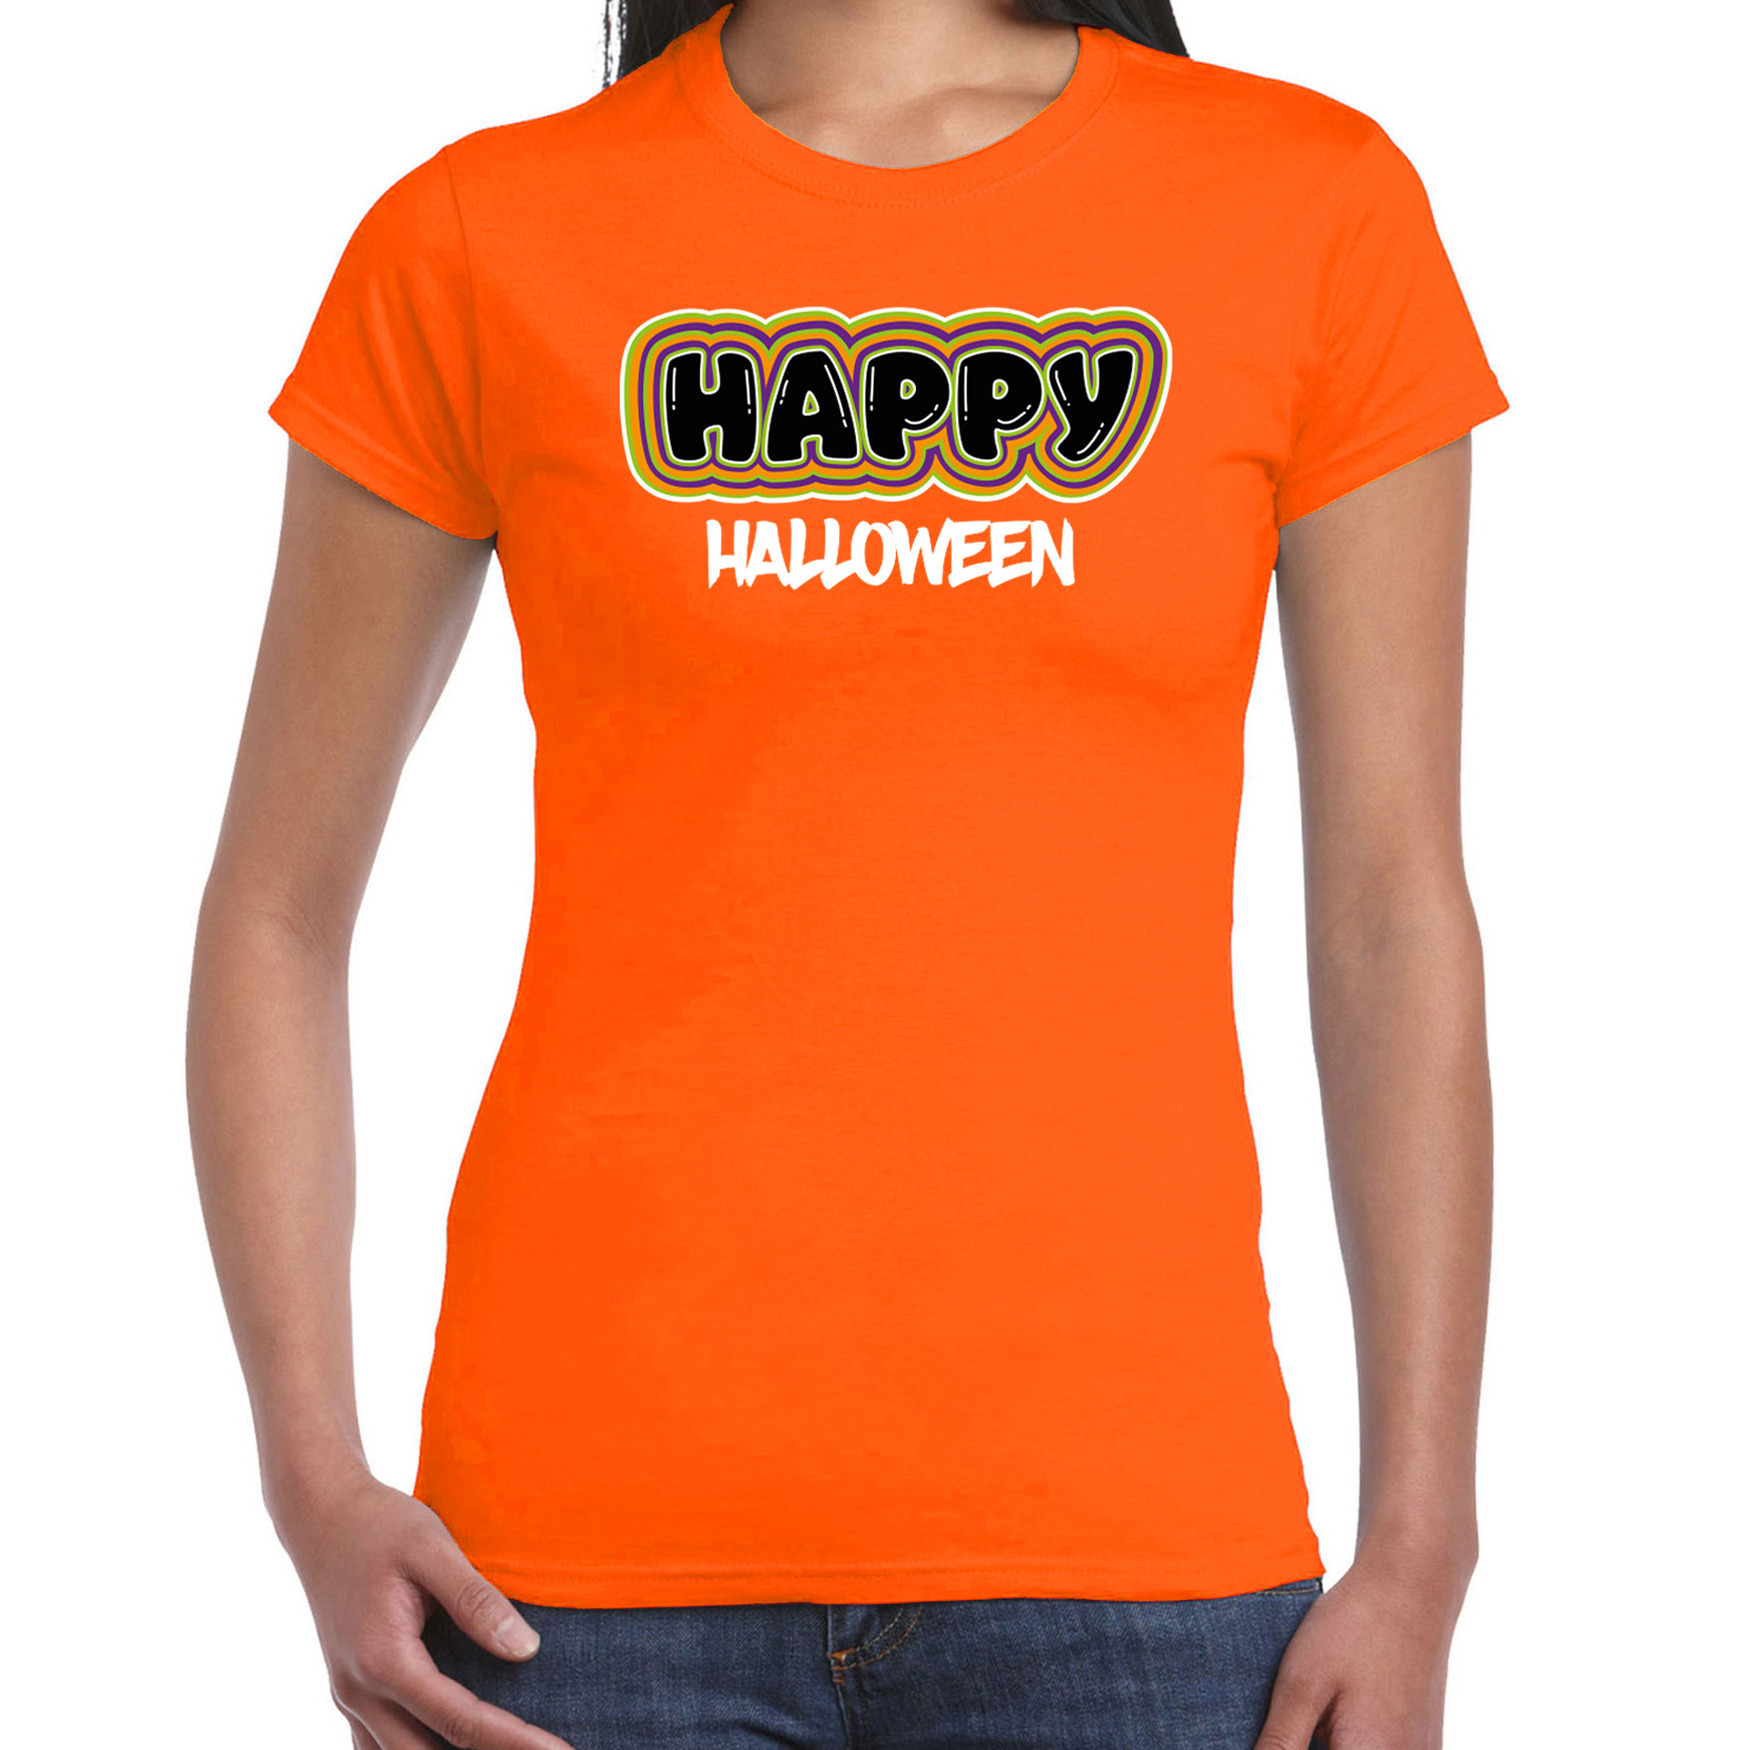 Halloween verkleed t-shirt dames - Happy Halloween - oranje - themafeest outfit